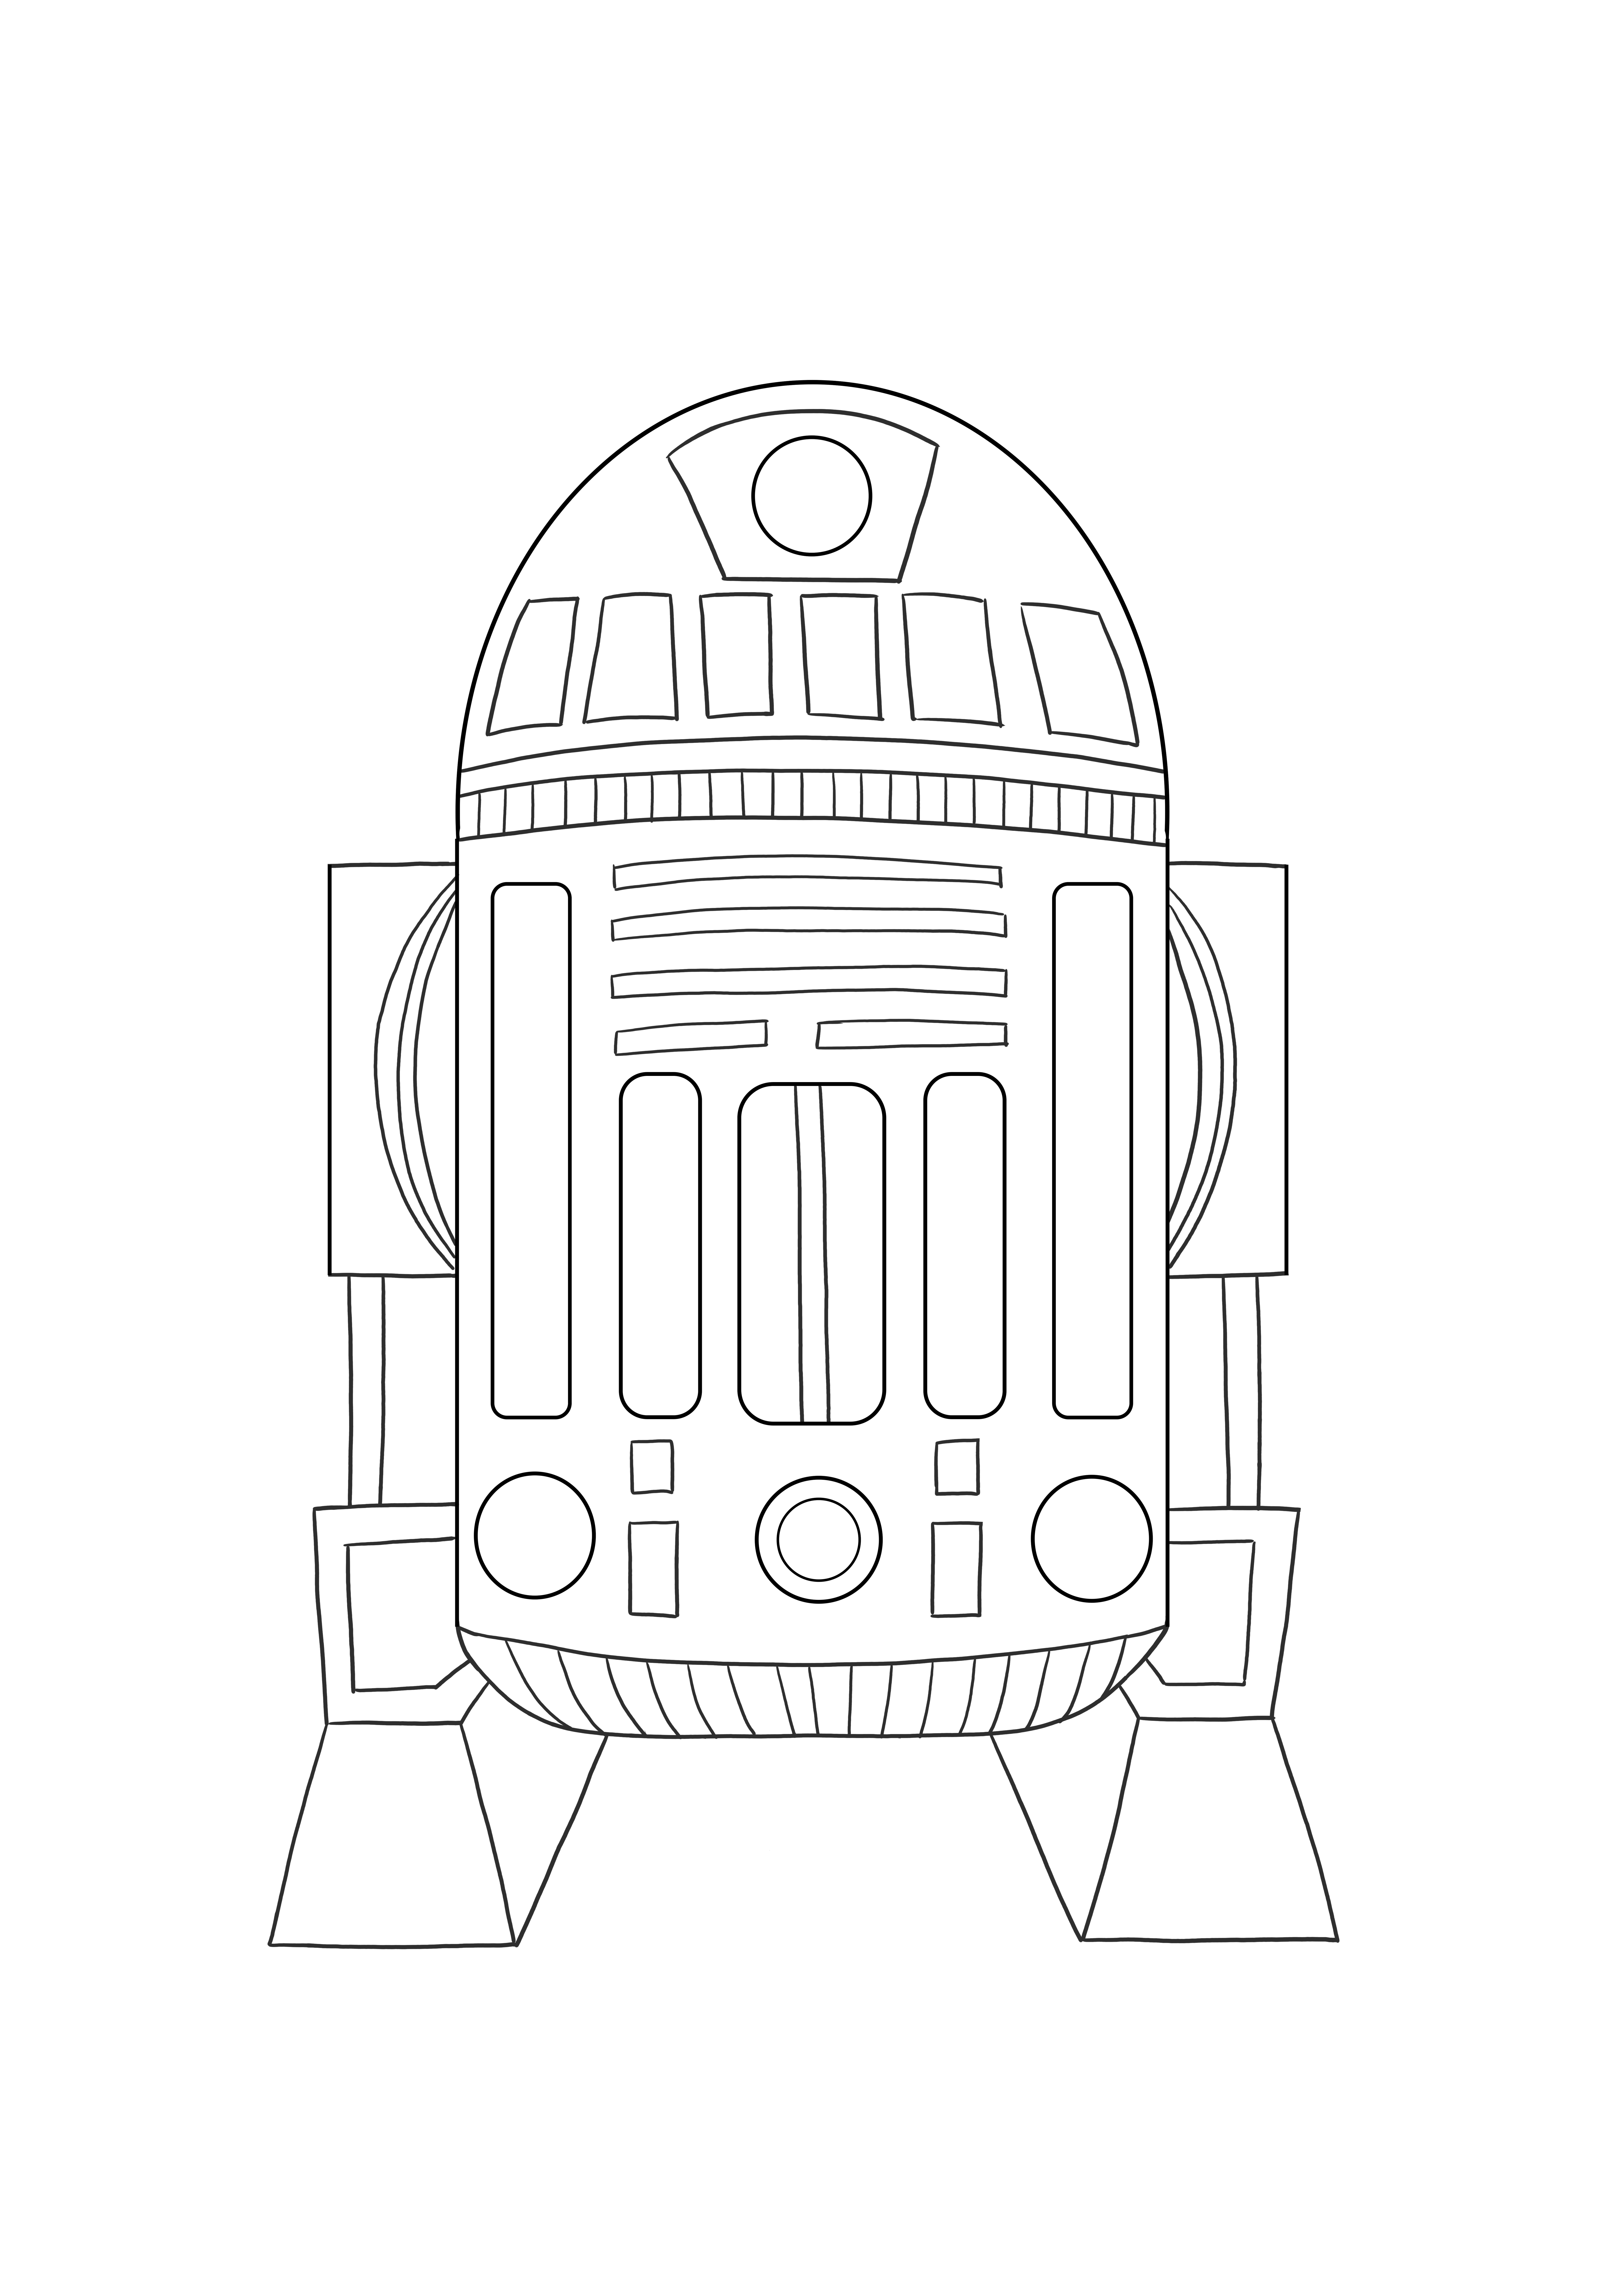 Astromed Droid R2 immagine stampabile gratuita da colorare per i bambini